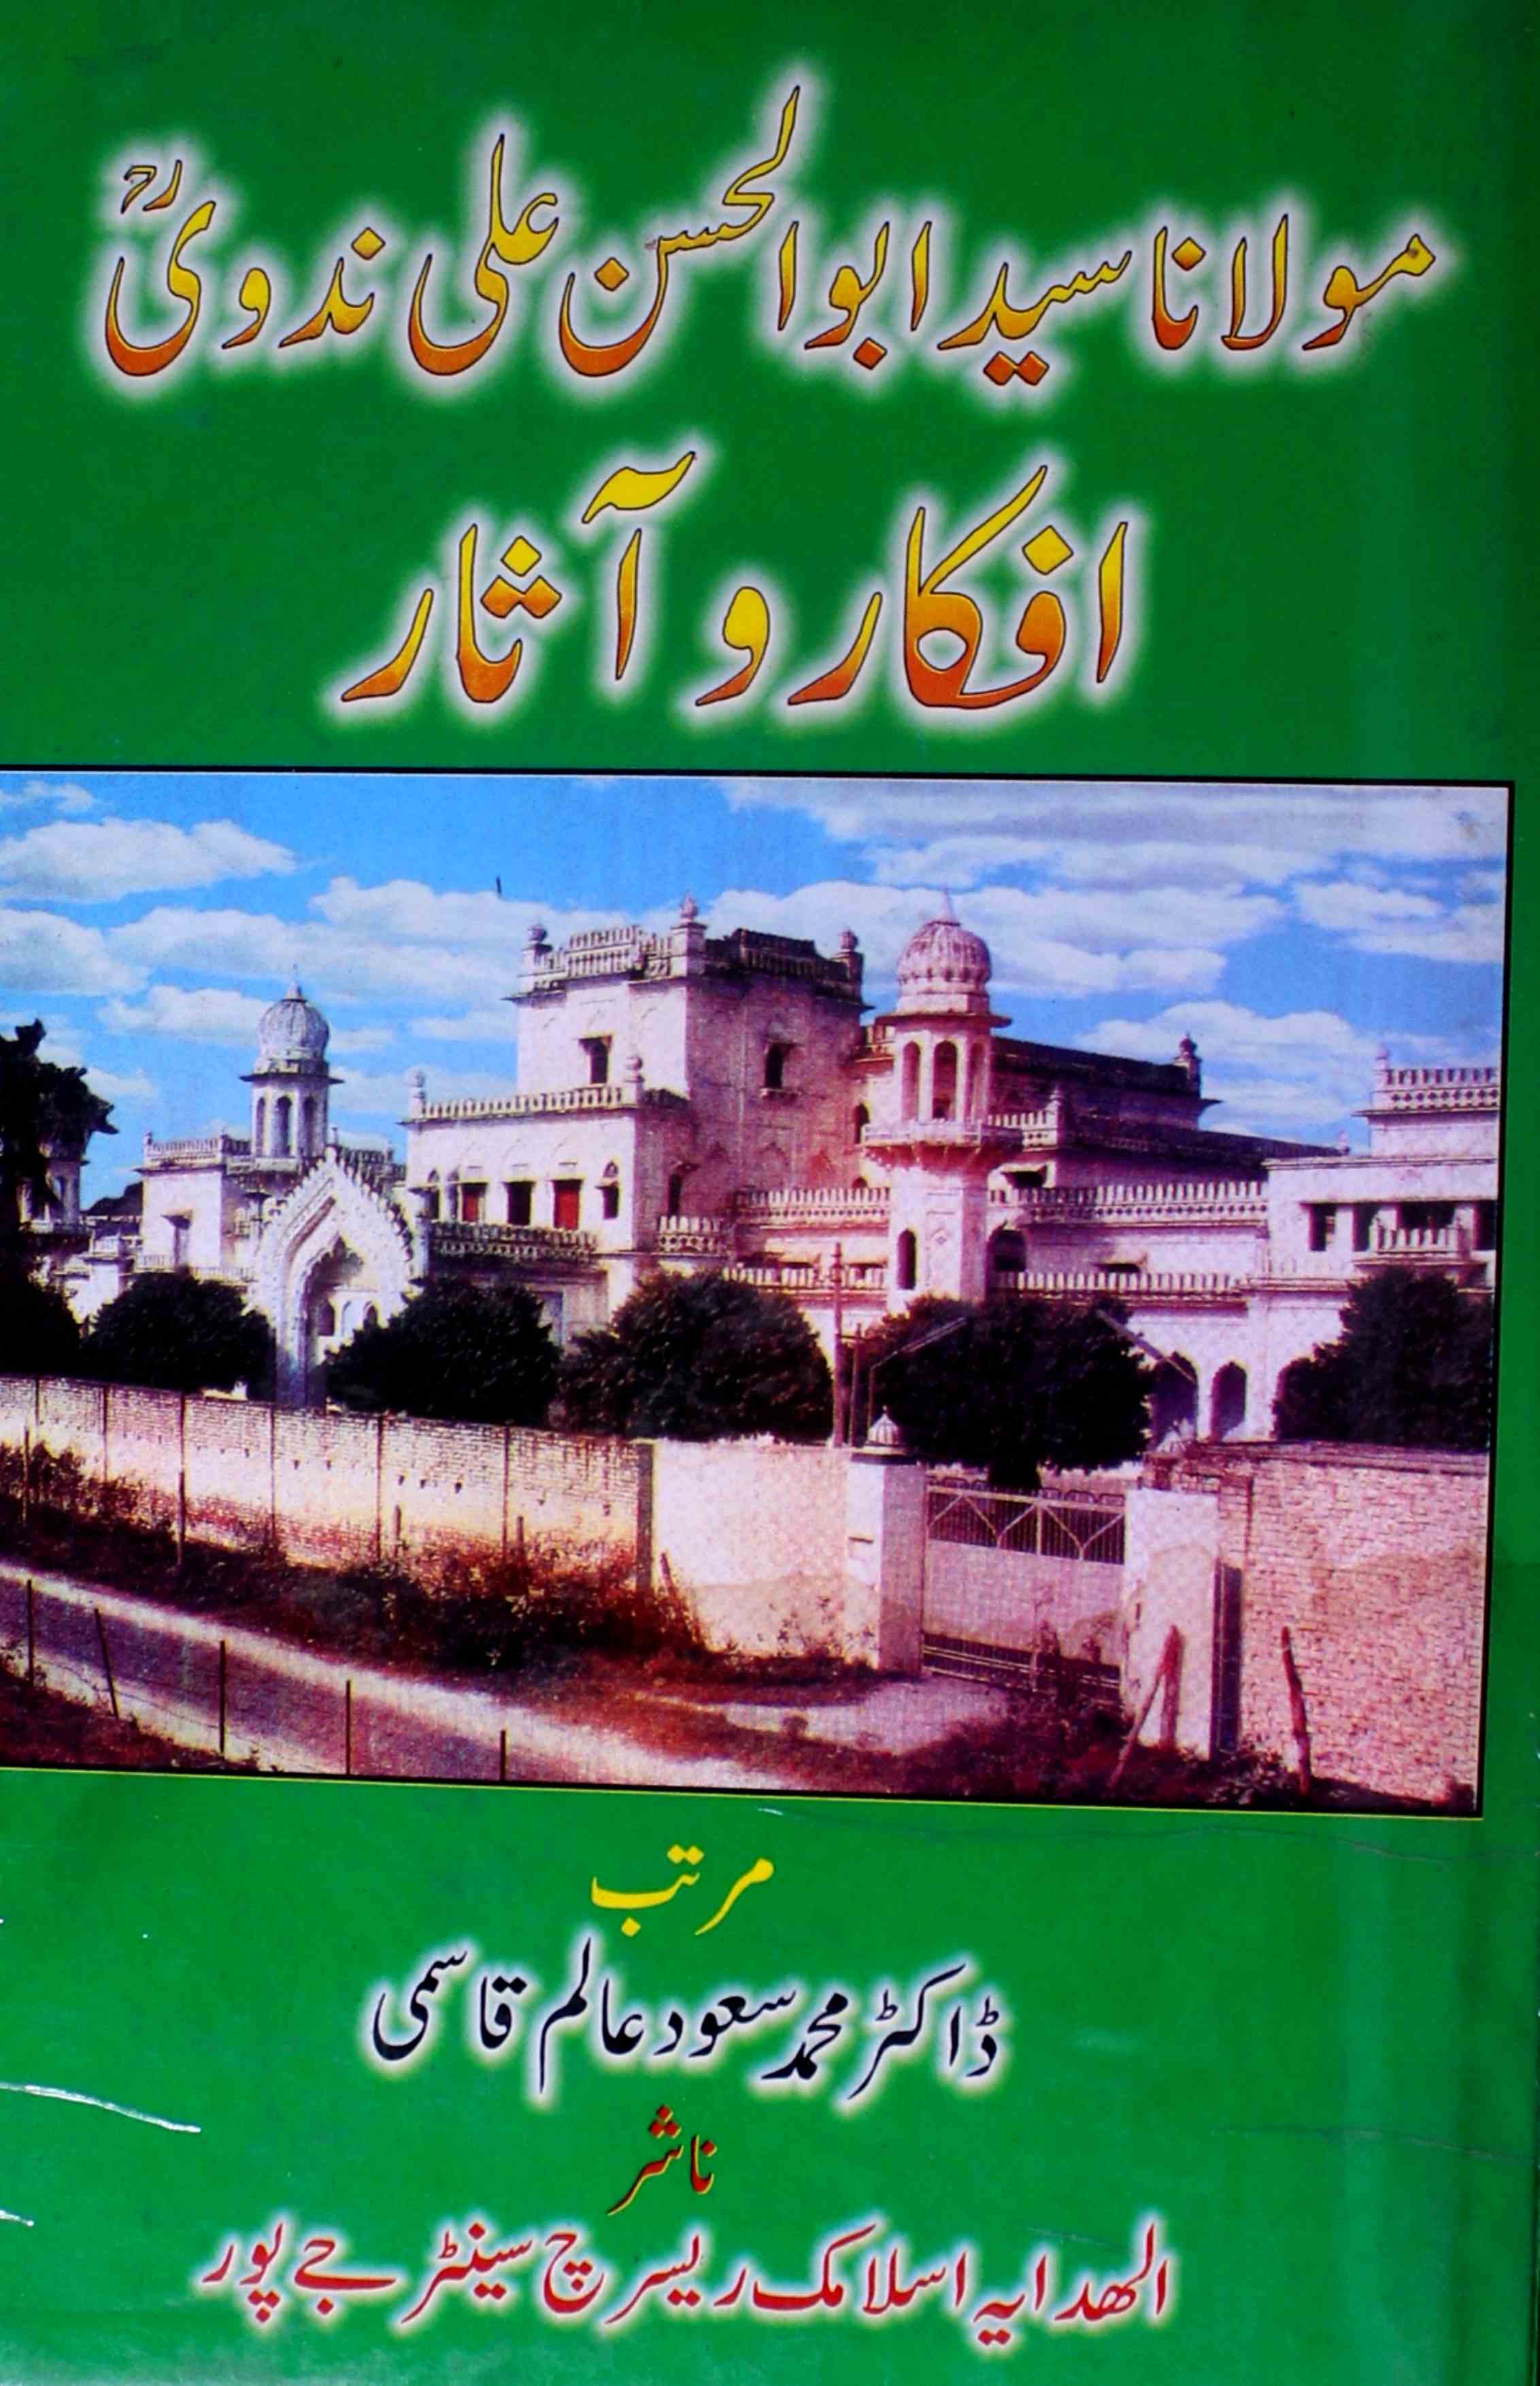 Maulana Syed Abul Hasan Ali Nadvi